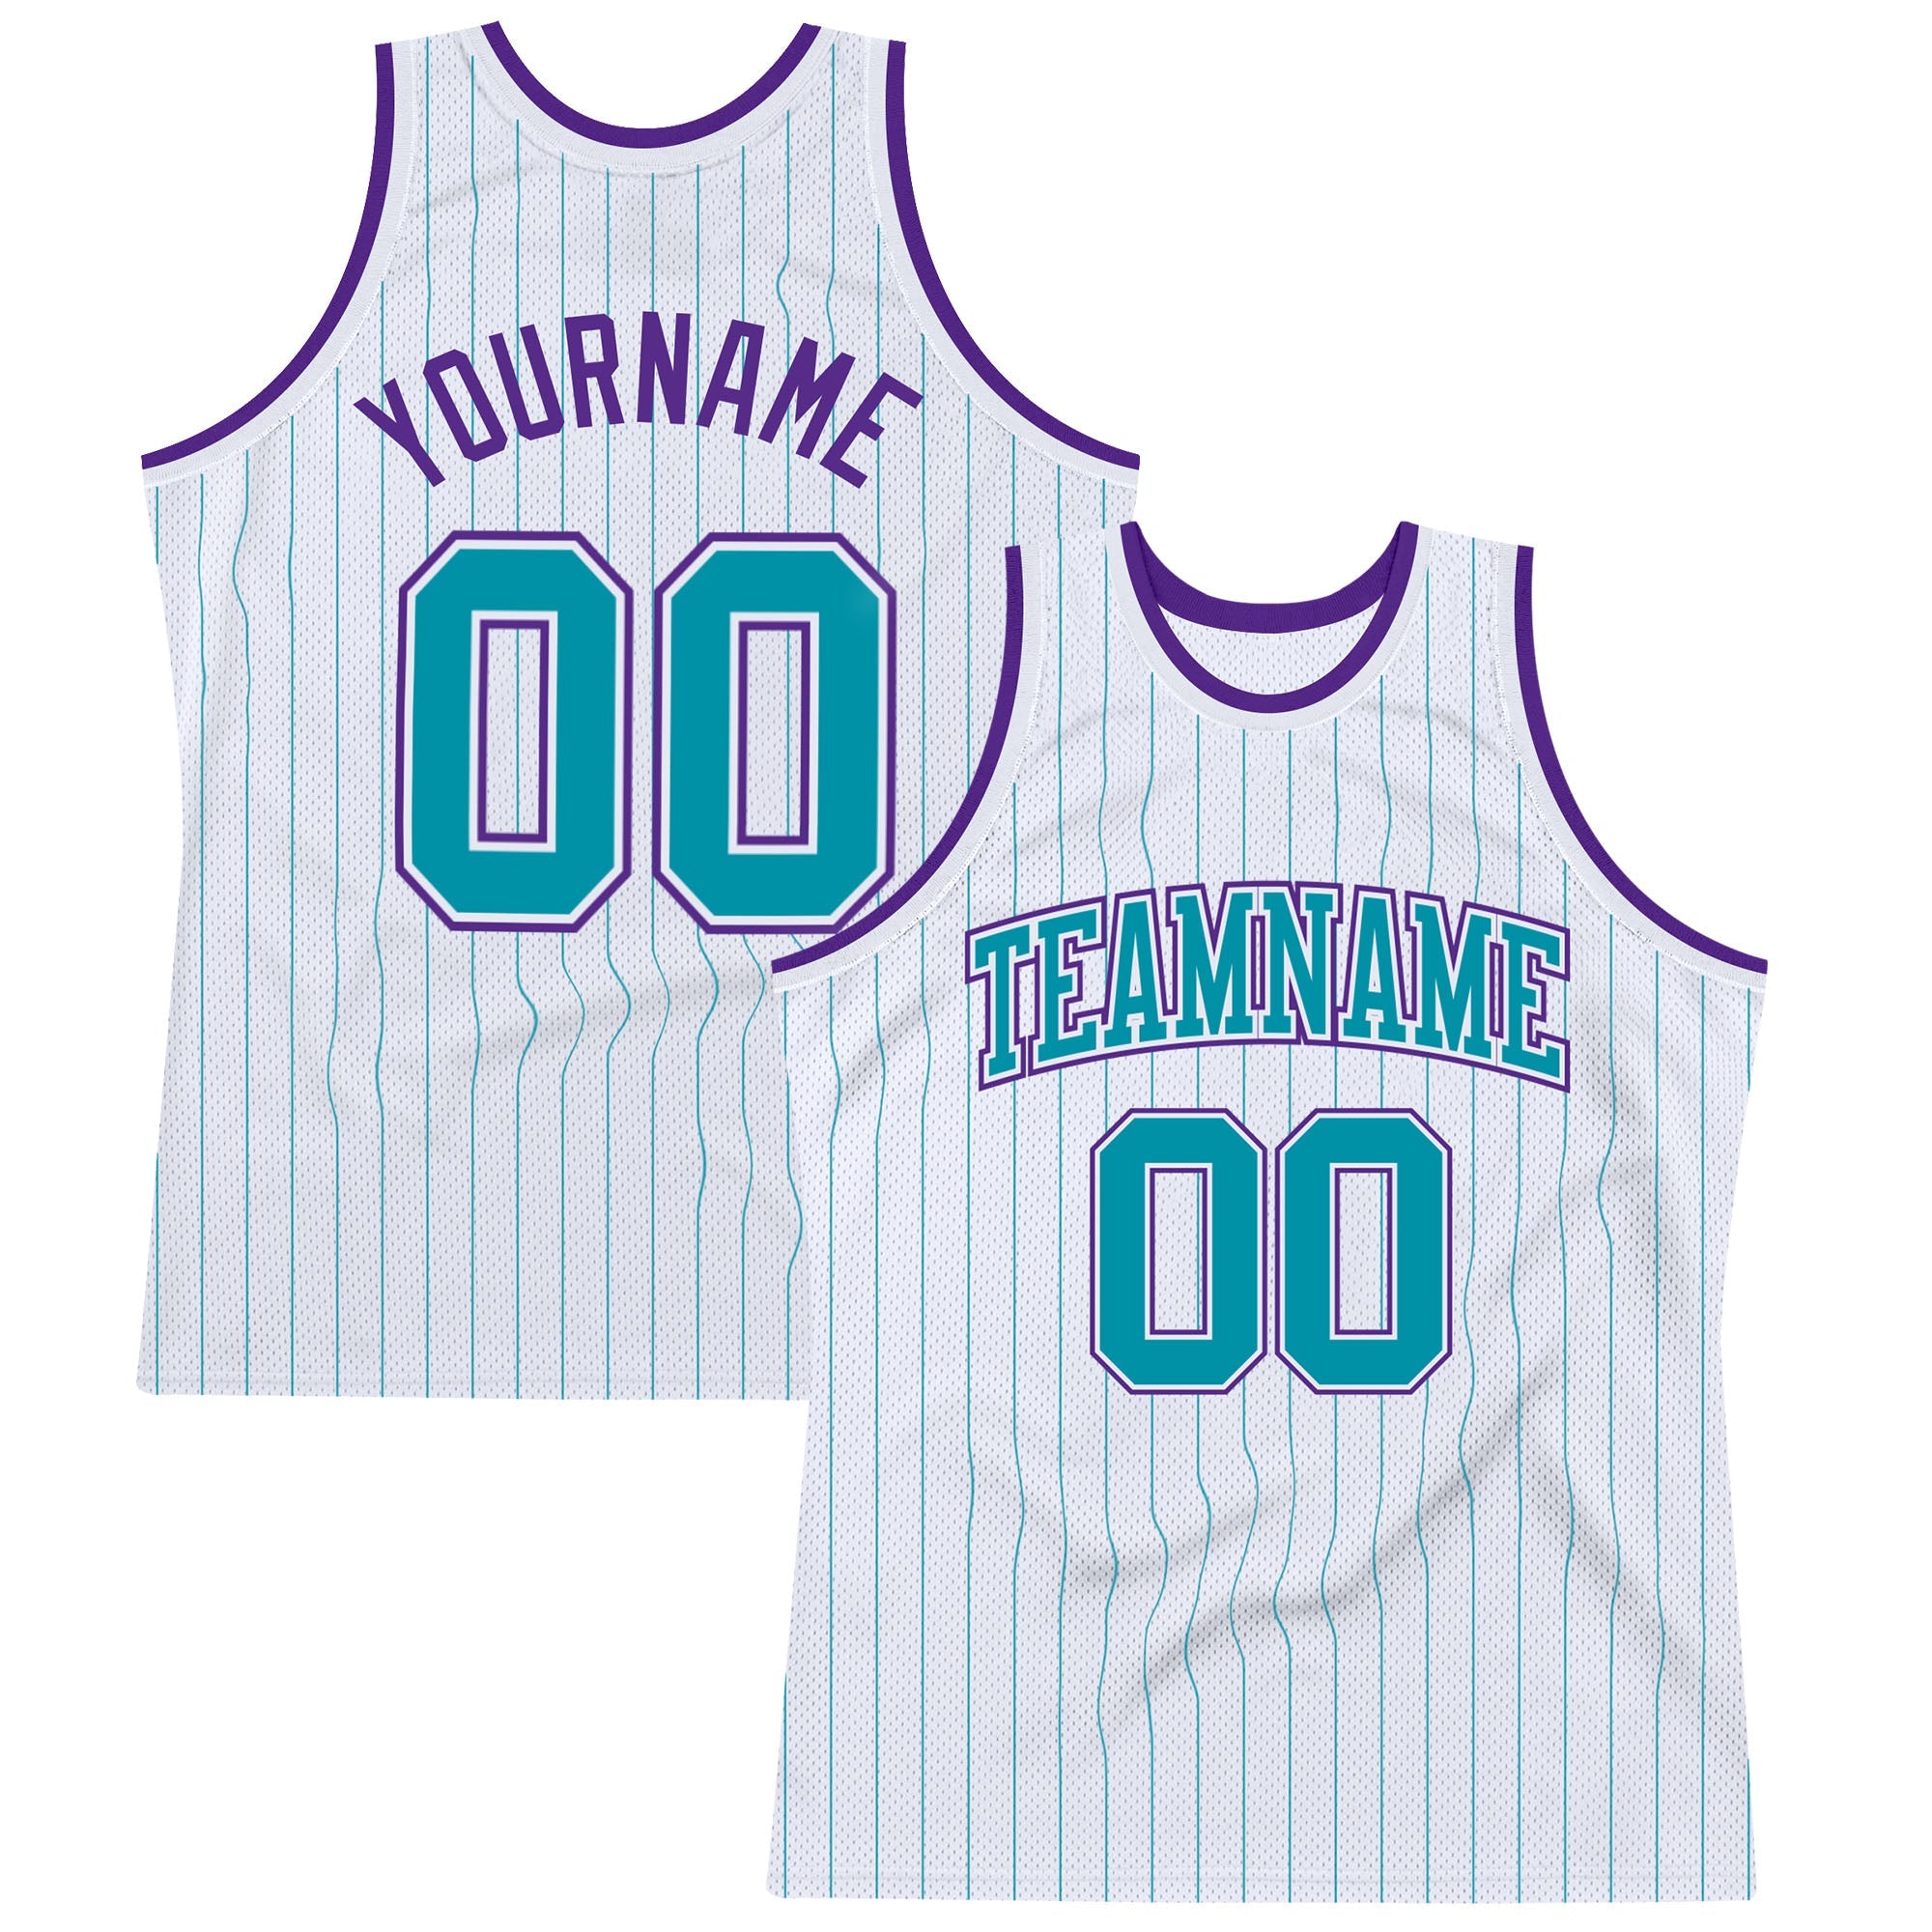 Personnalisé blanc Teal Pinstripe Teal-violet authentique maillots de basket-ball